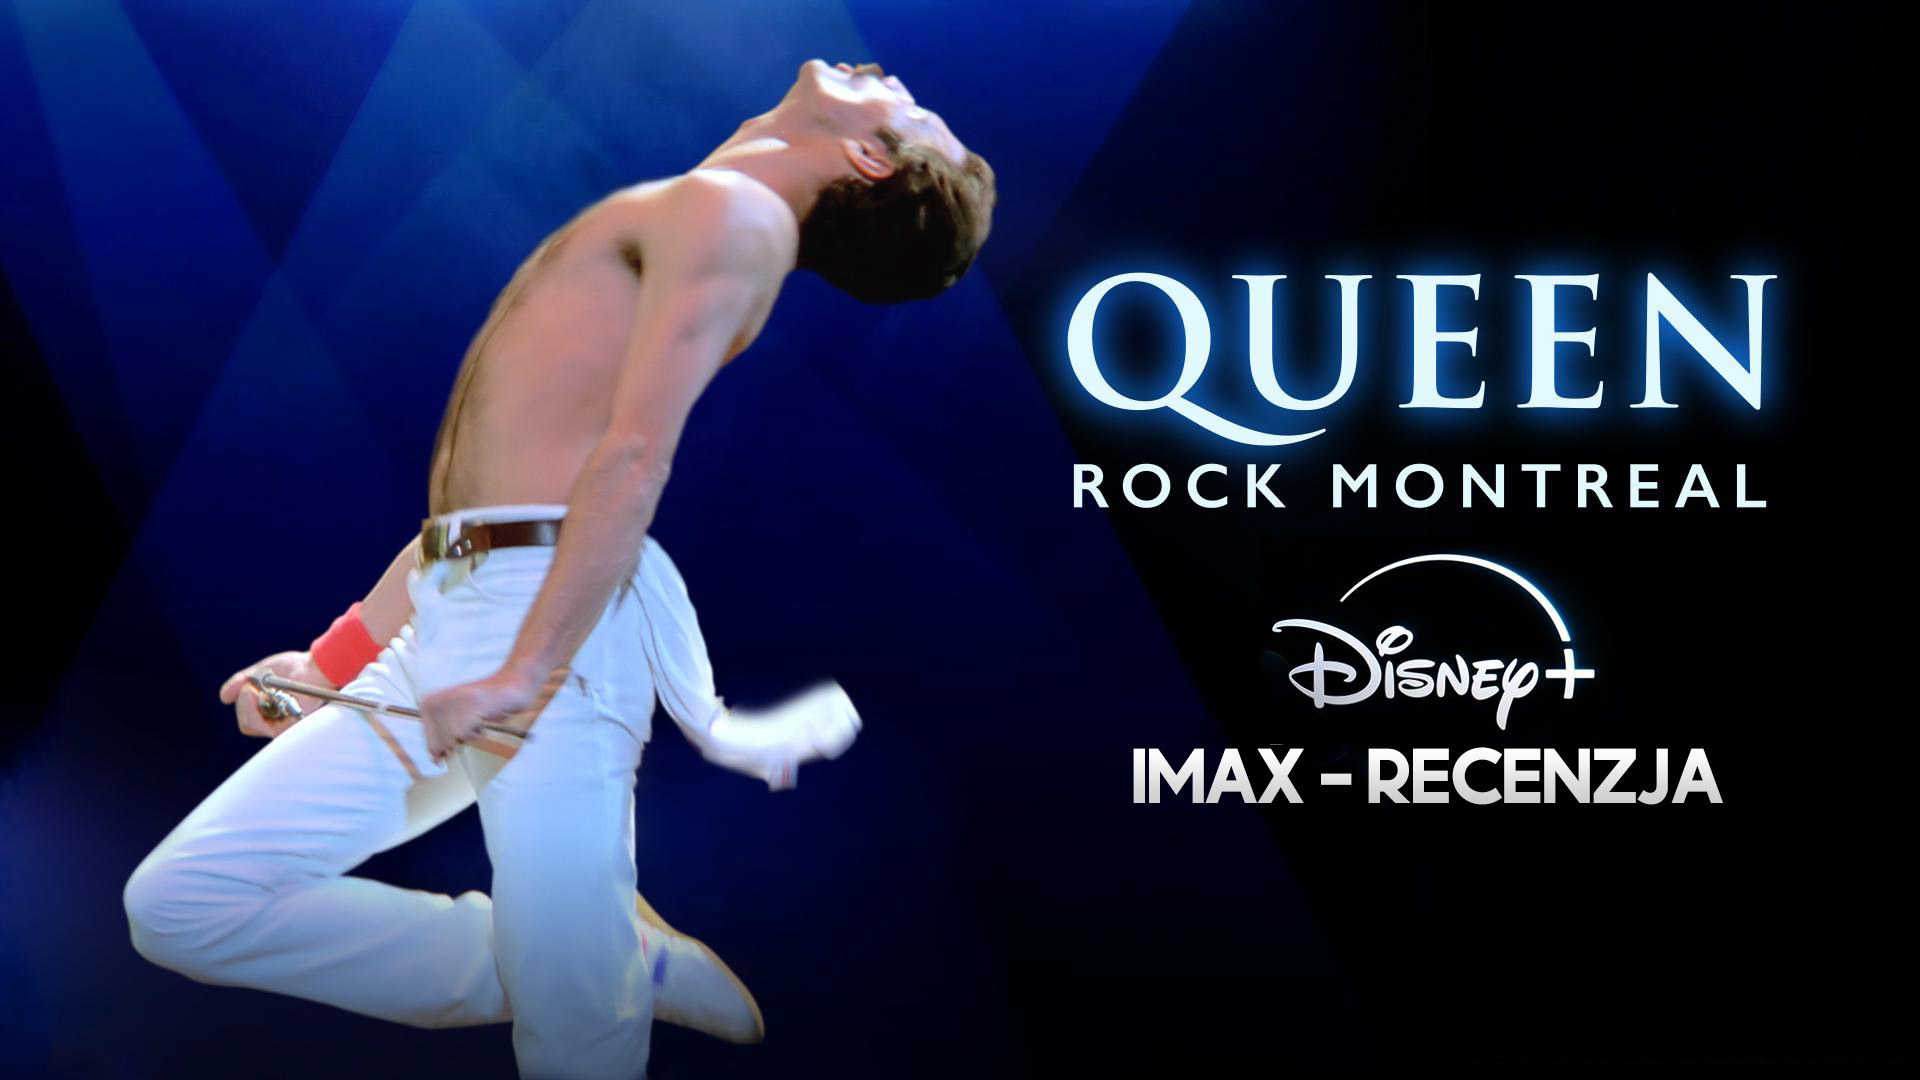 Oceniamy koncert Queen Rock Montreal w wersji 4K IMAX na Disney+. Uczta dla oczu i uszu!